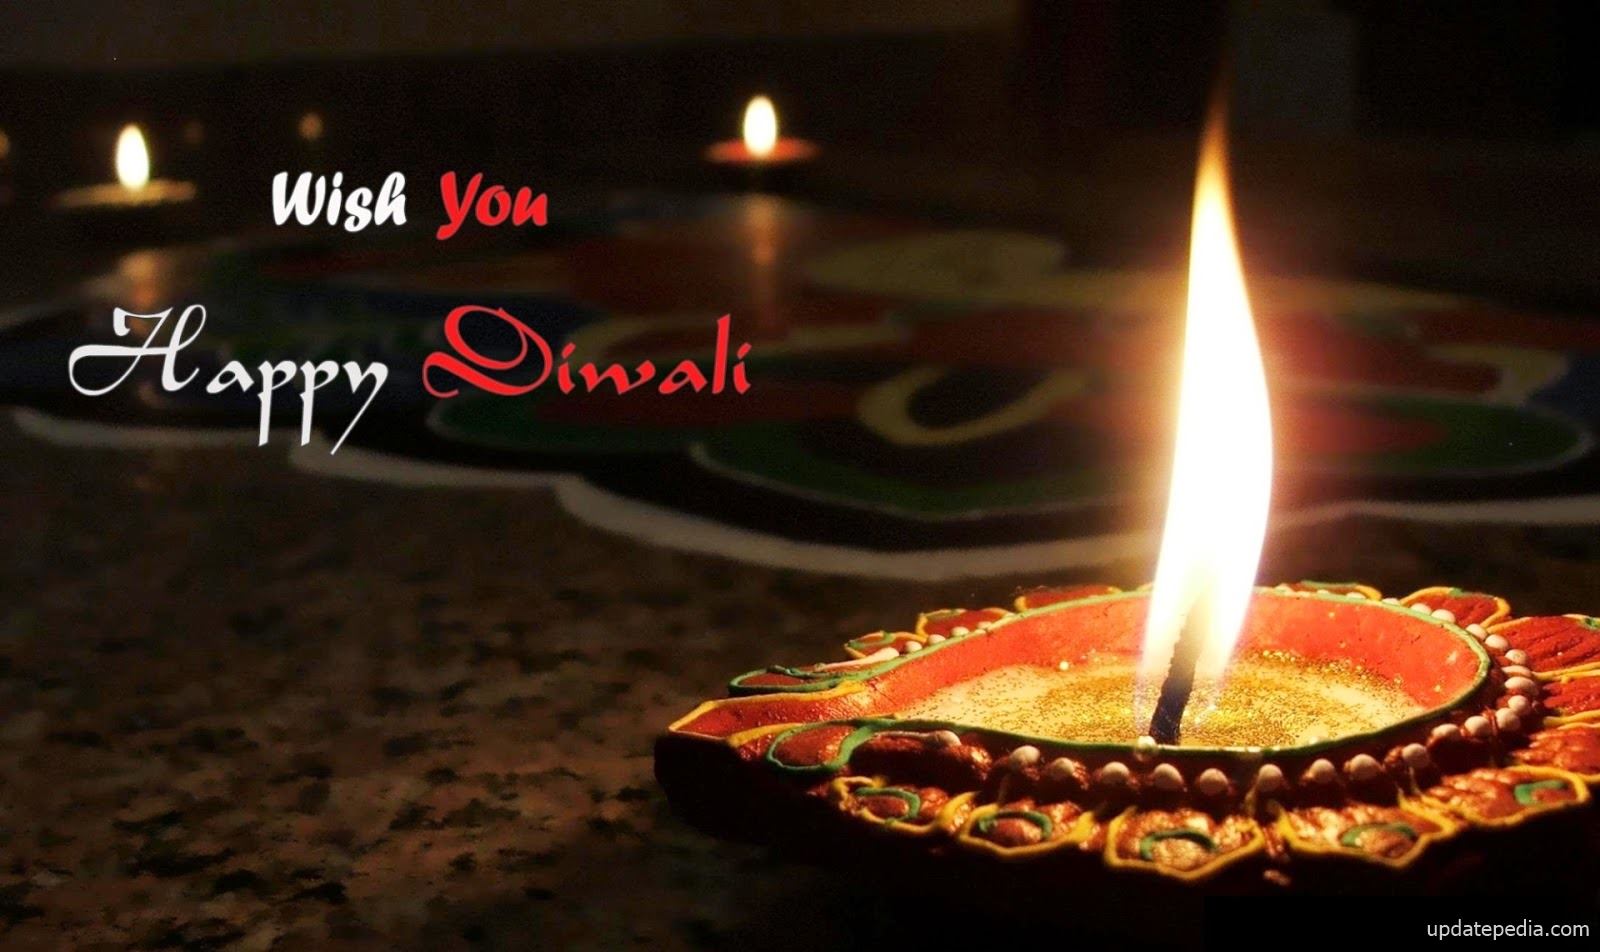 wish you happy diwali image